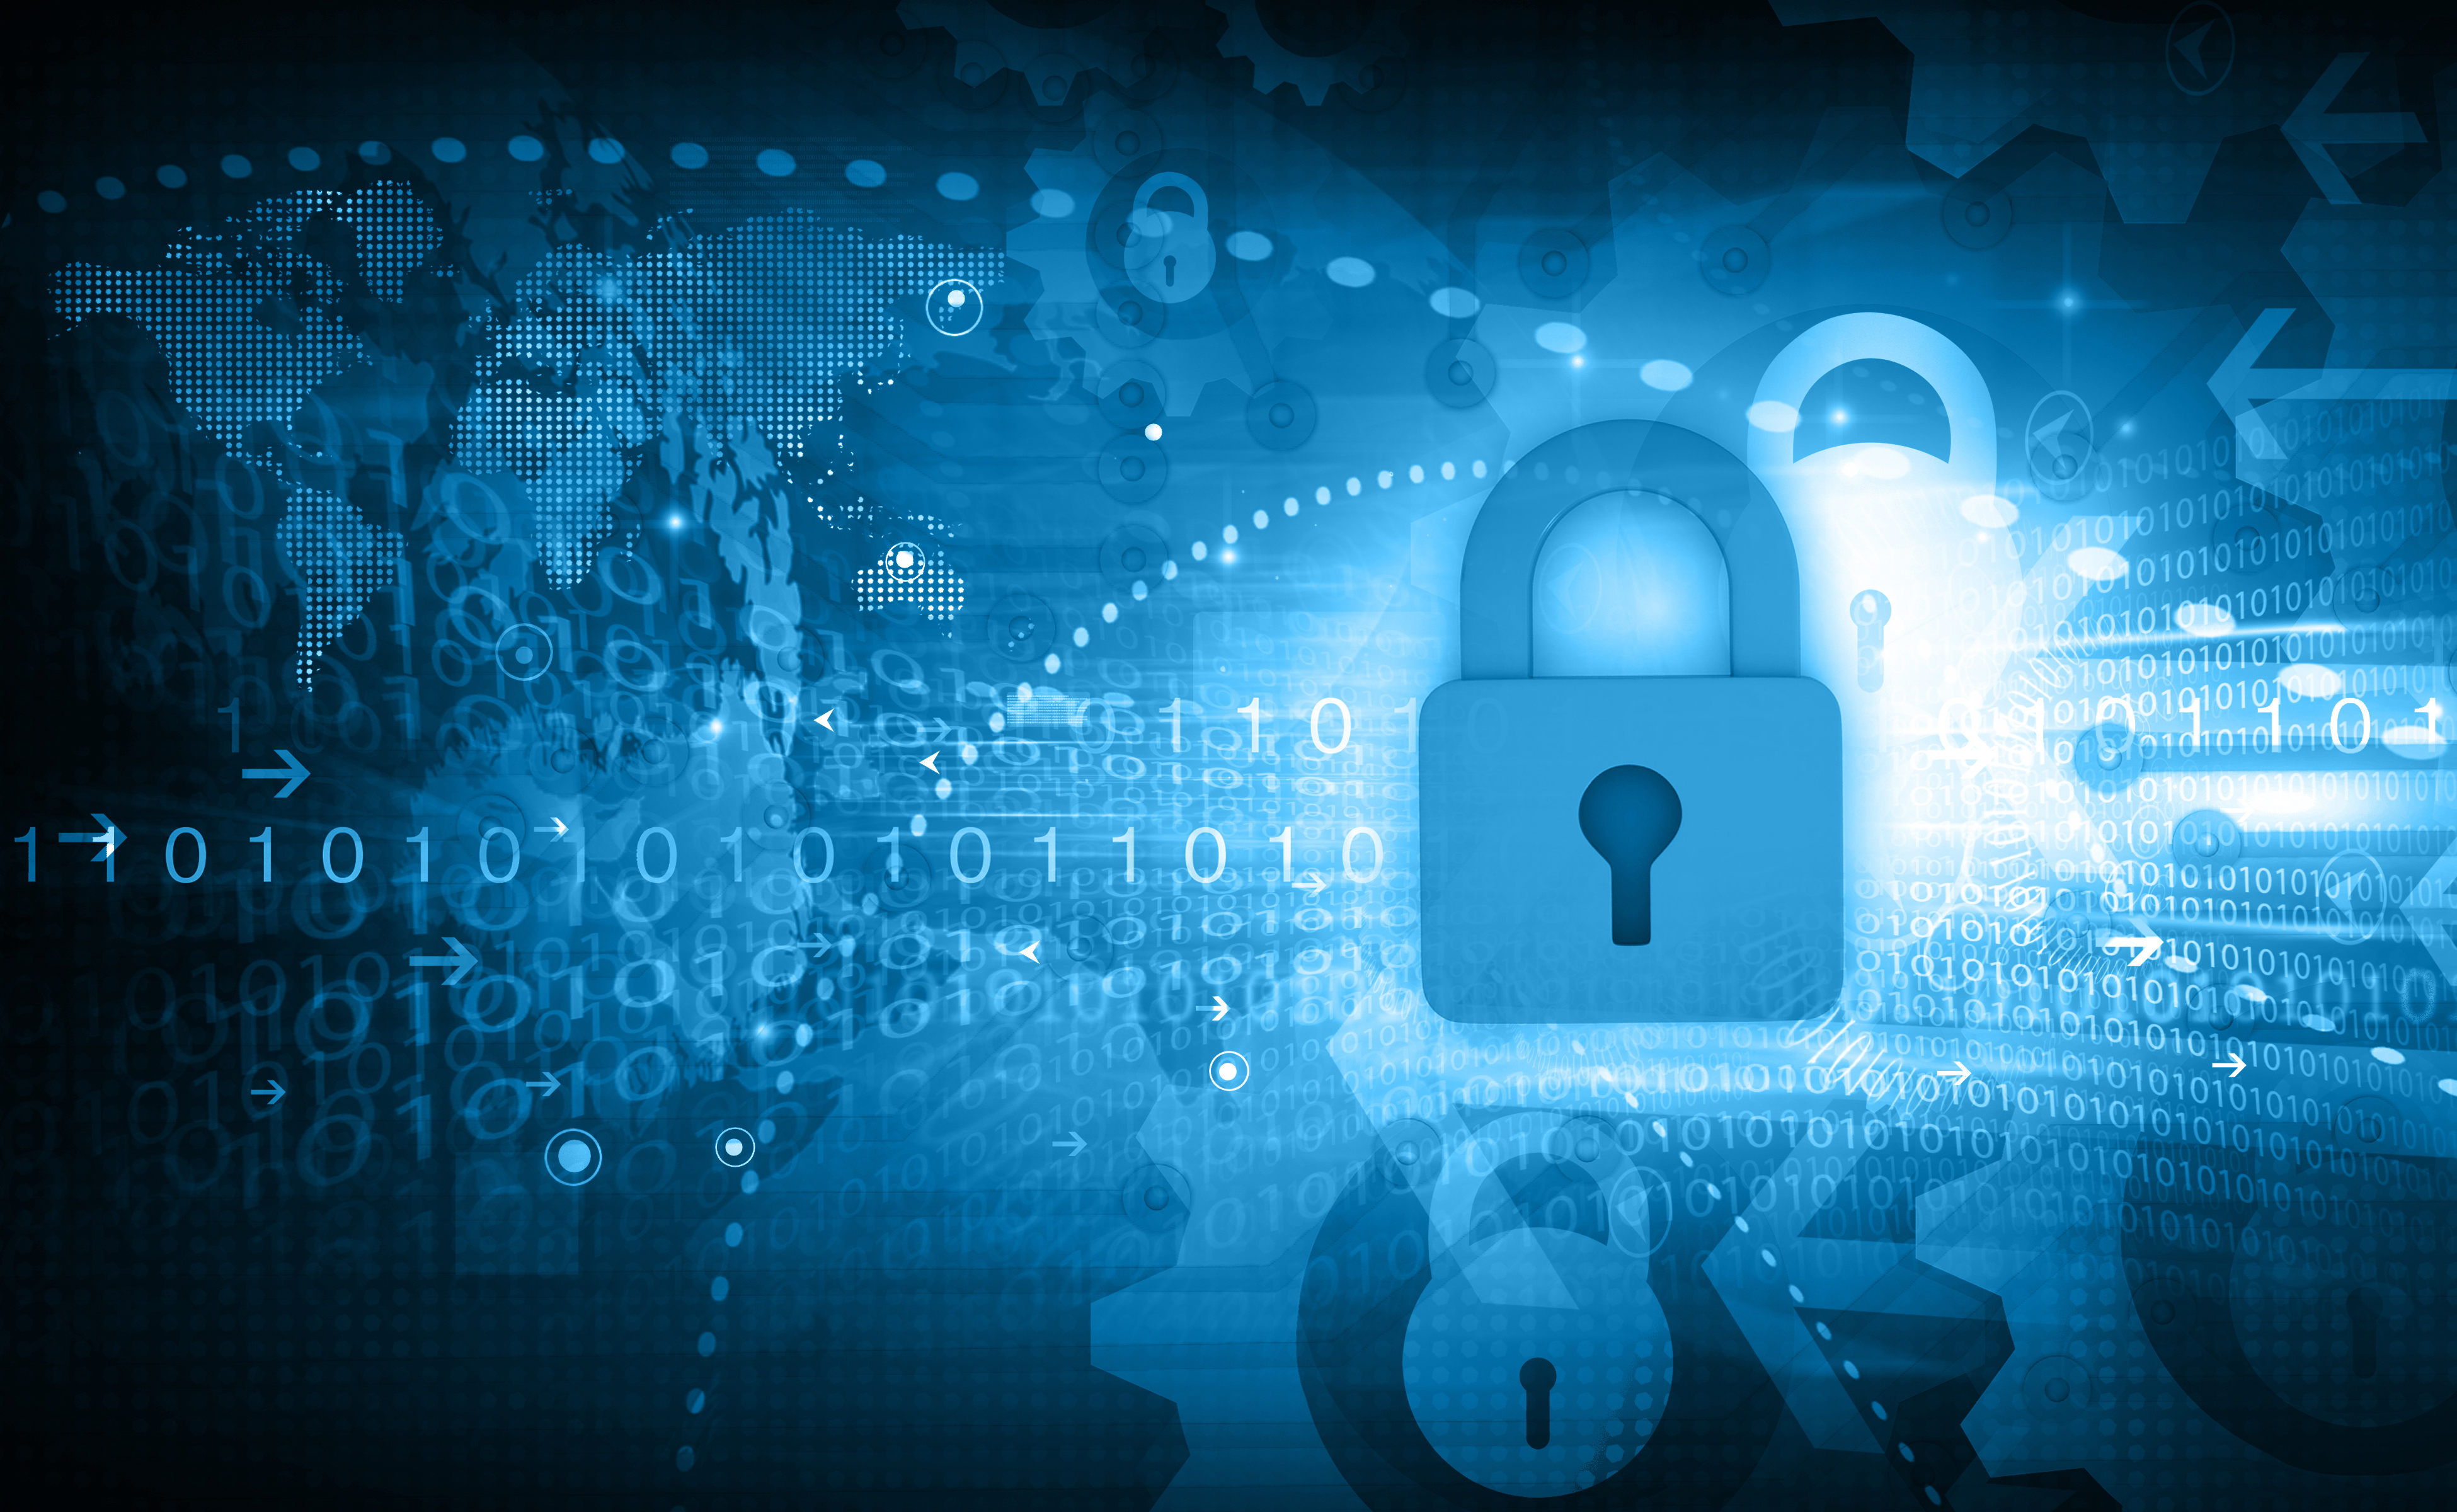 Attacchi informatici: la Cyber Security diventa una priorità per le imprese